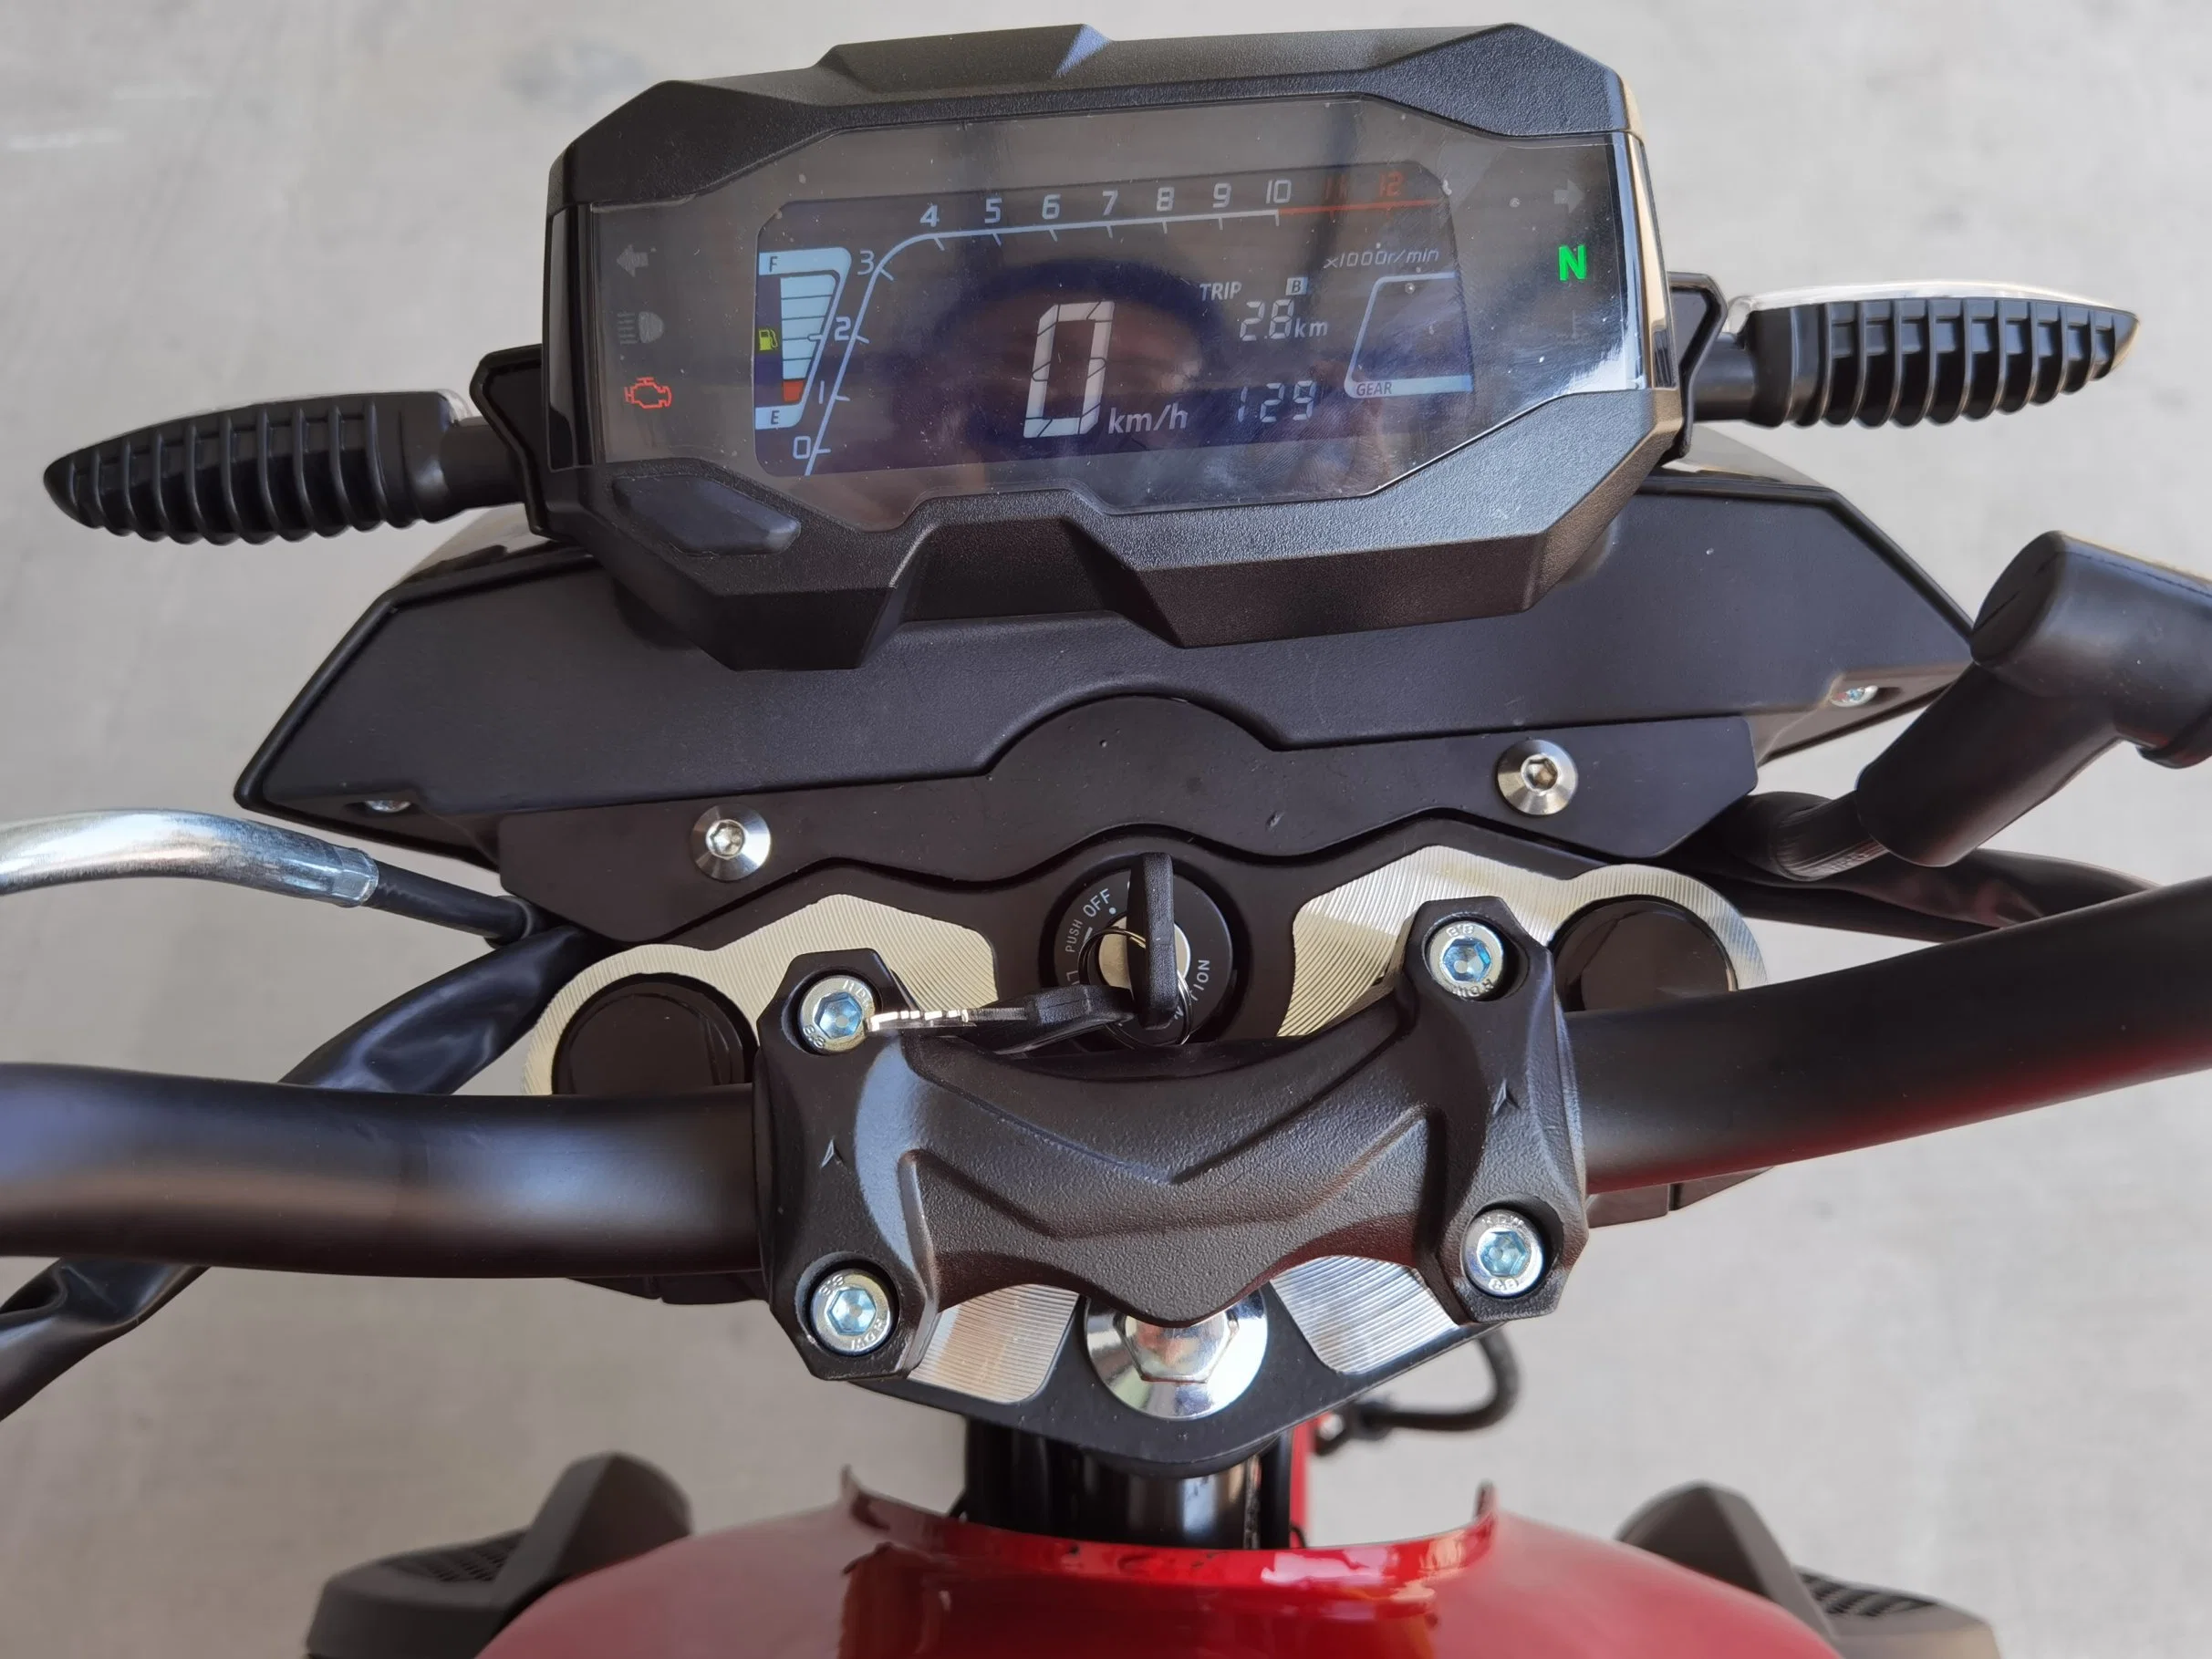 125cc/150cc/200cc/250cc Neues Design Motorrad mit LED-Licht von YAMAHA (MT)